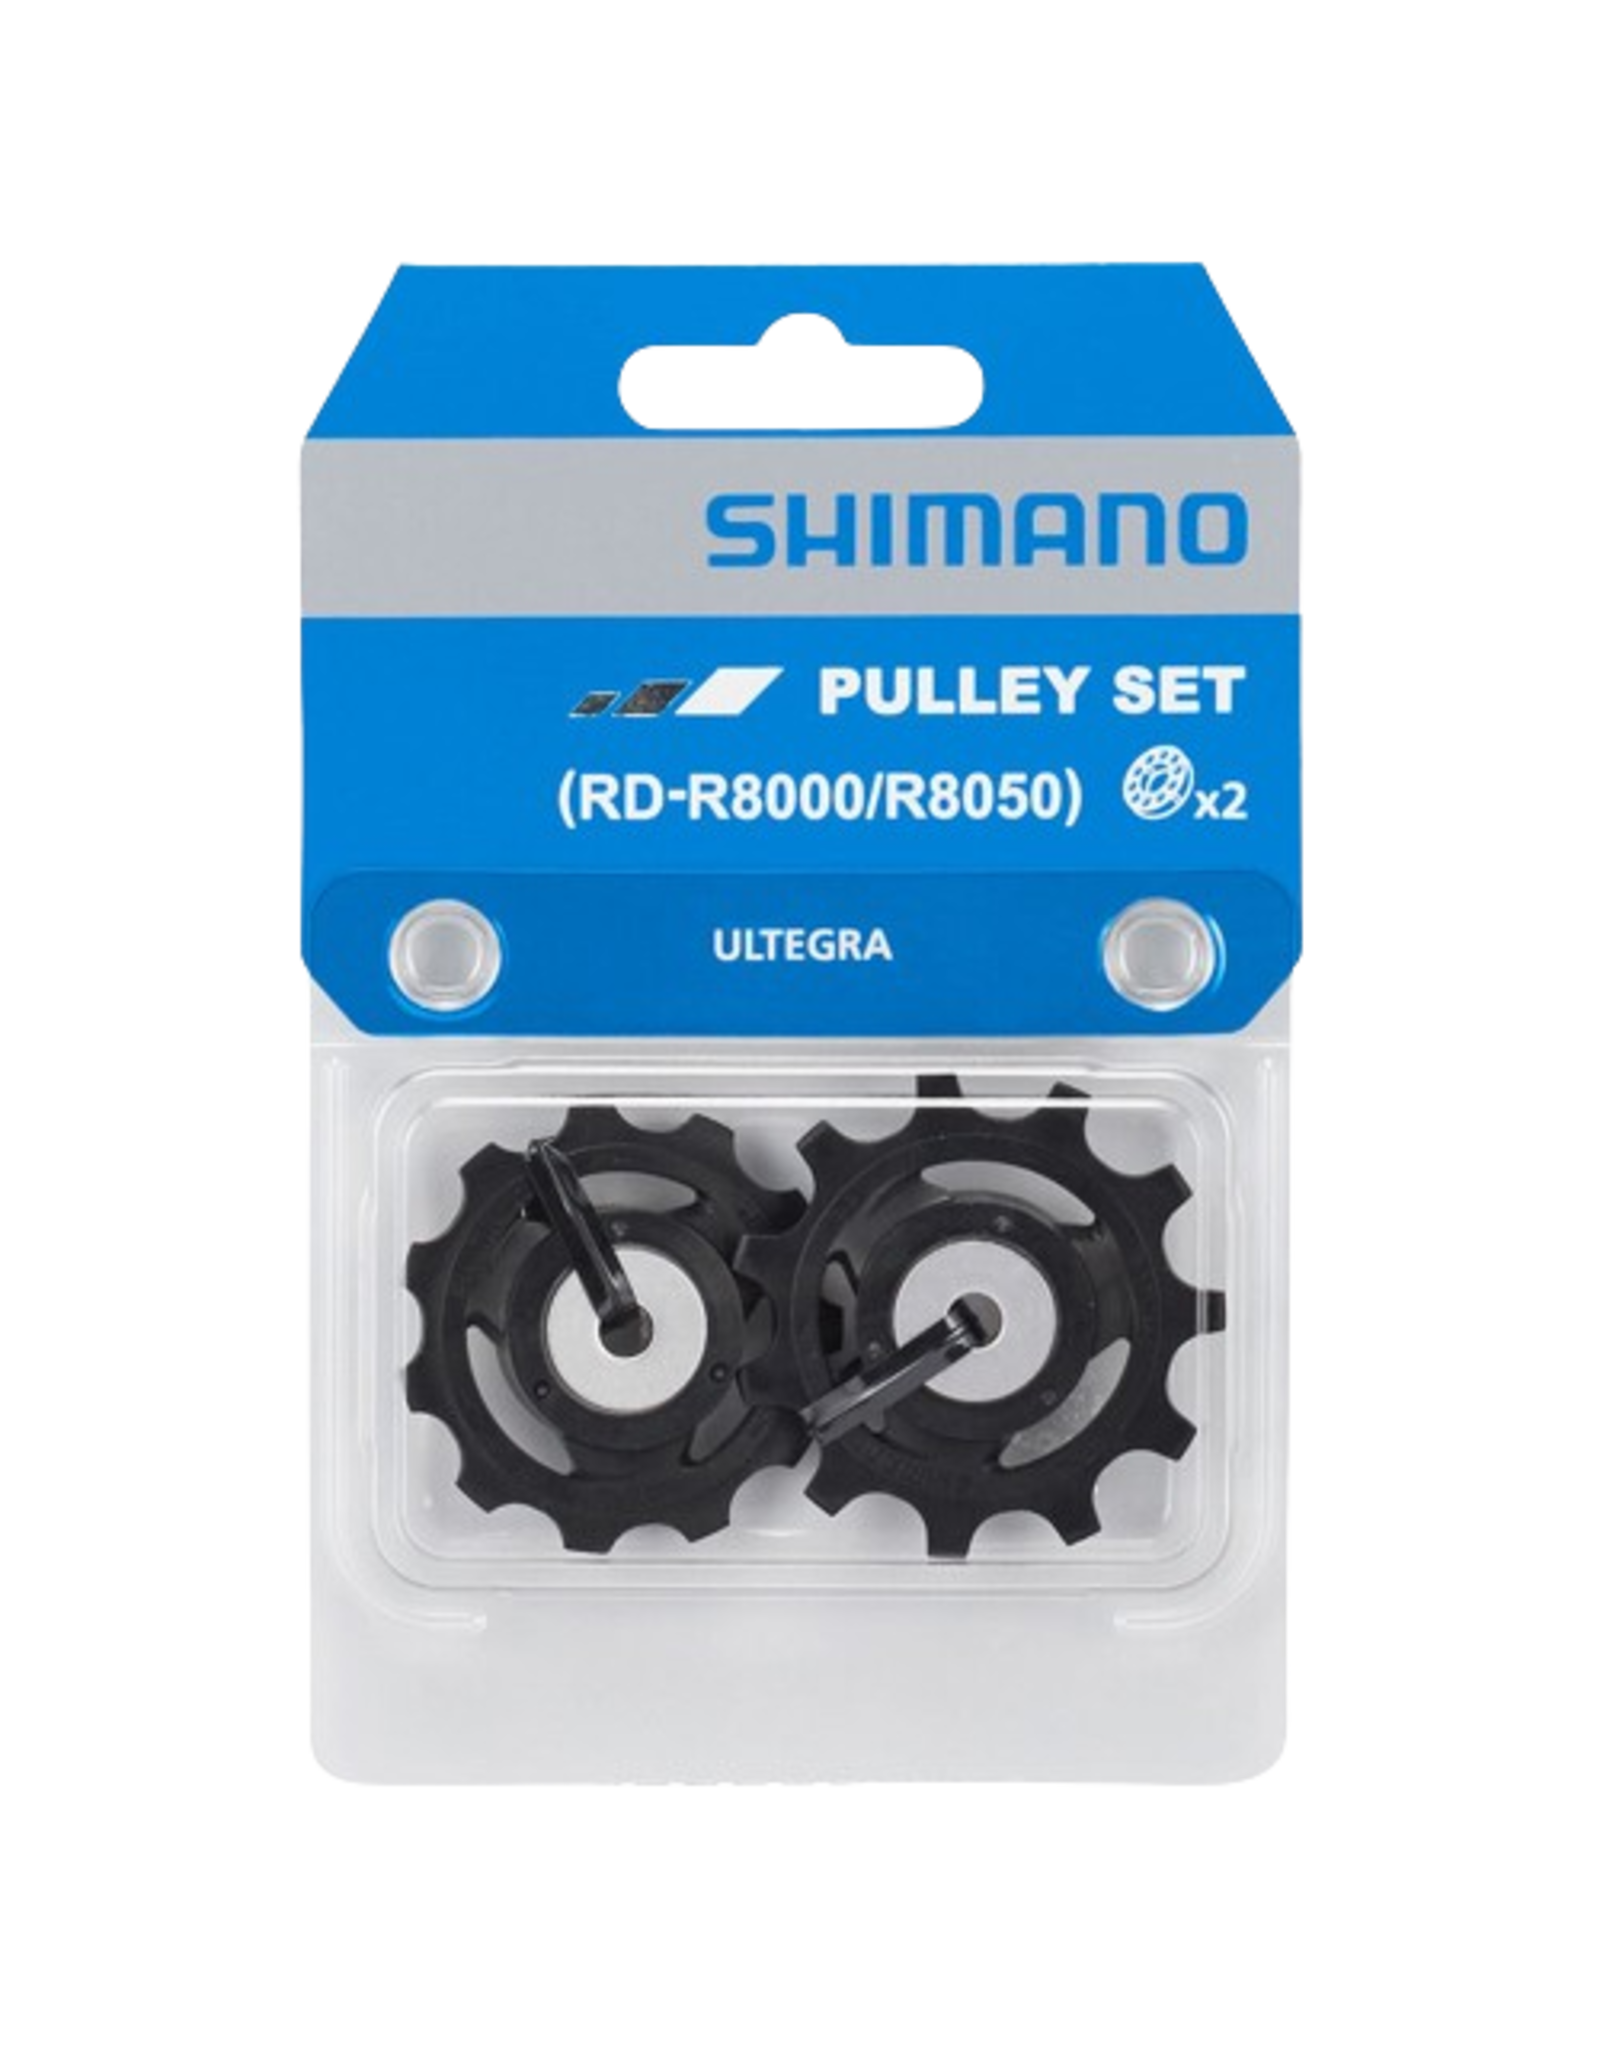 Shimano Pulley set for rear derailleur Shimano R8000 Ultegra